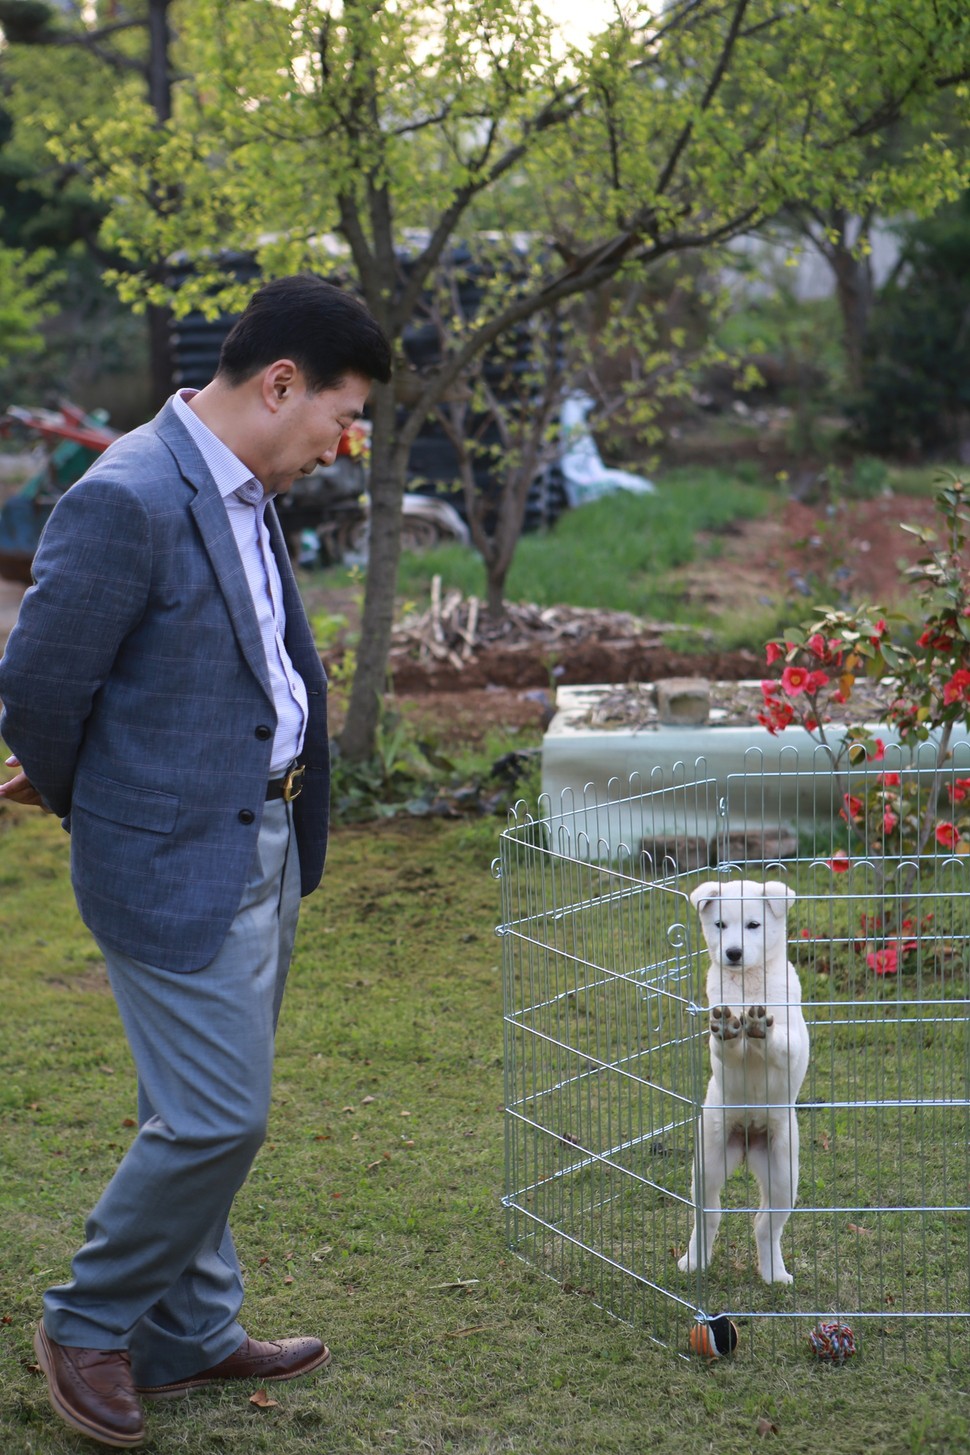 朴槿惠爱犬离开青瓦台后 每天散步生活滋润